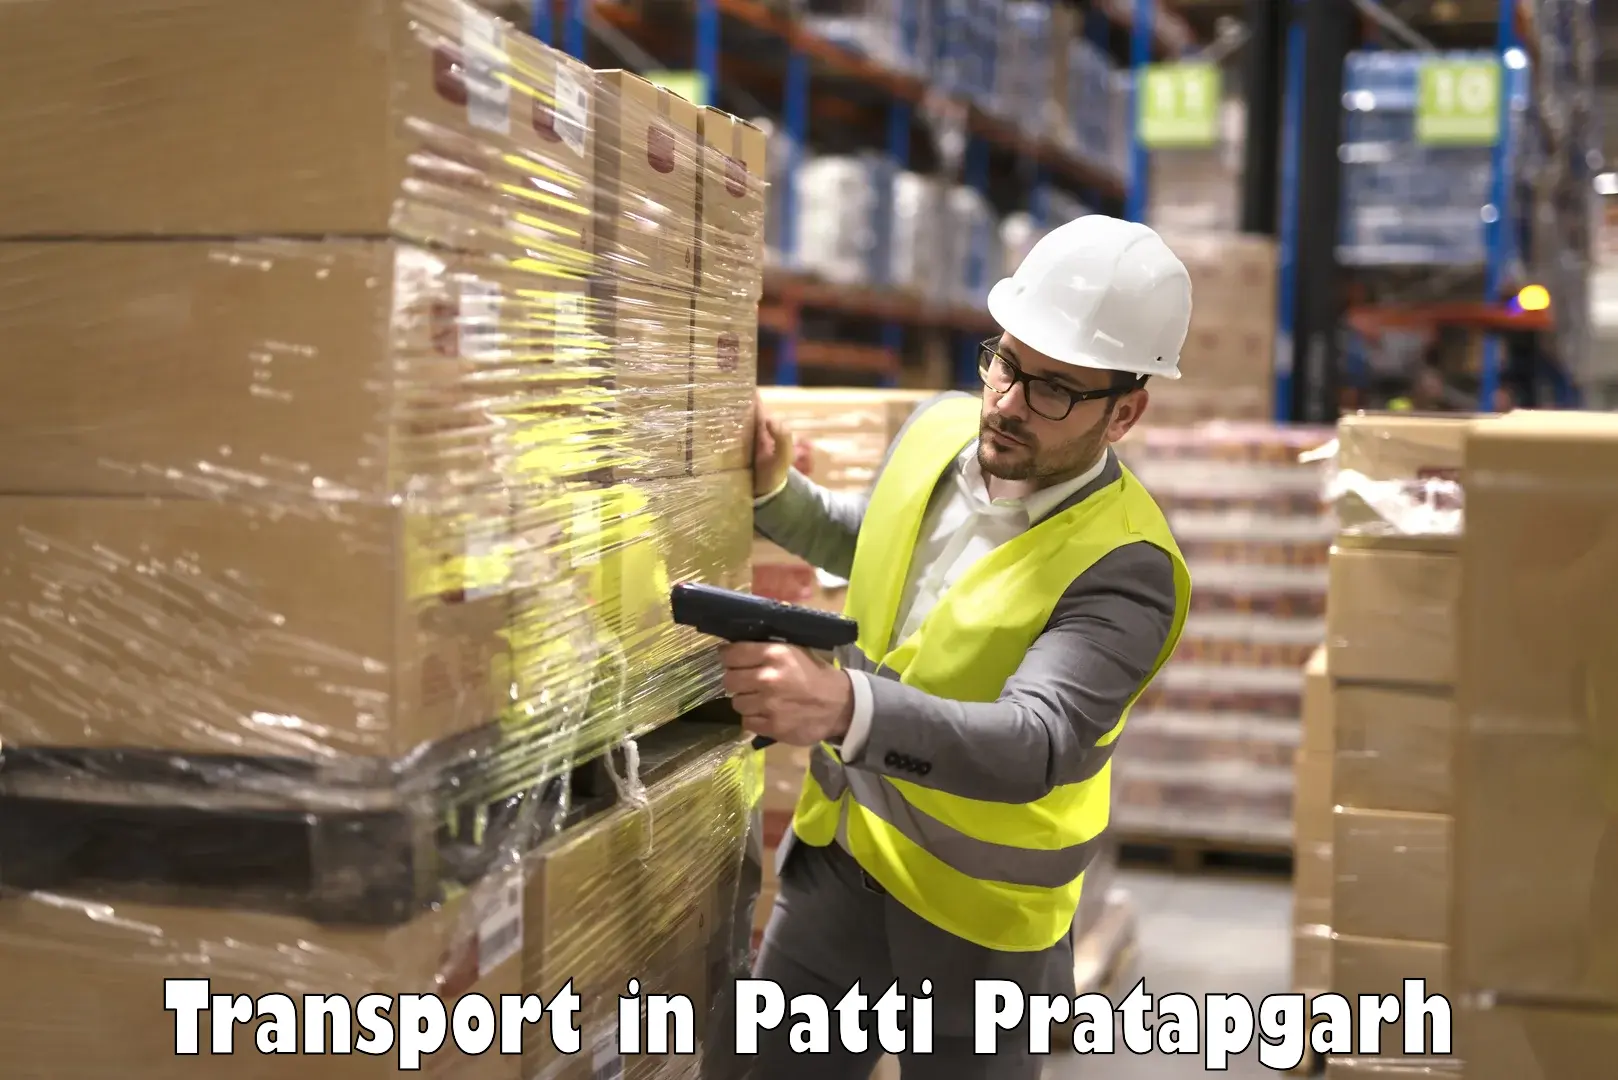 Truck transport companies in India in Patti Pratapgarh